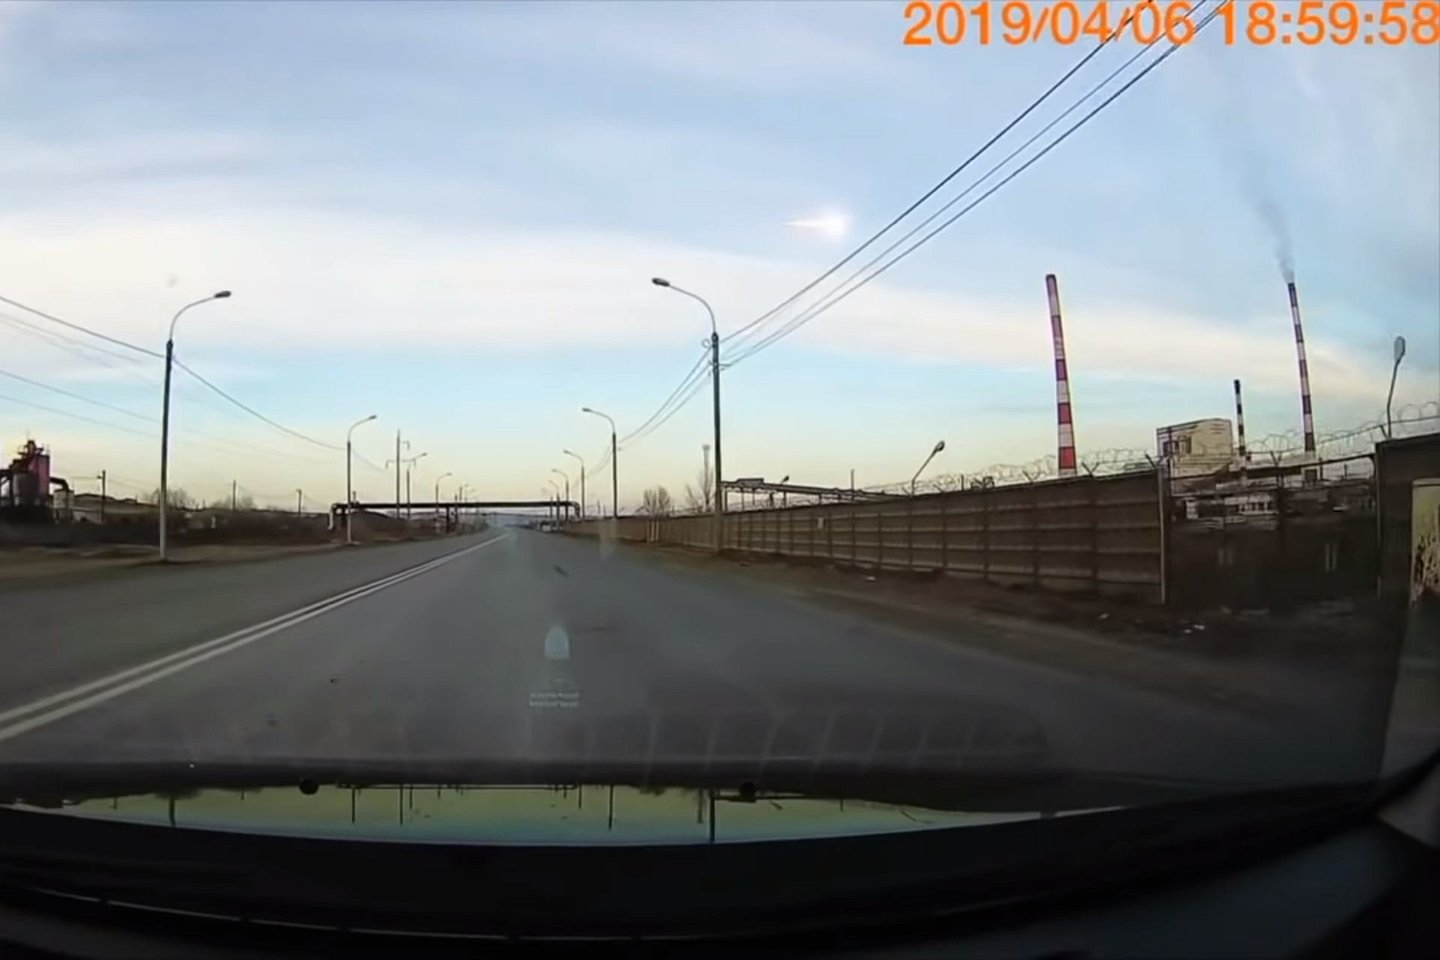 19 val. vietos laiku (15 val. Lietuvos laiku) meteoras sprogo virš Krasnojarsko.<br> Autoregistratoriaus stop-kadras.